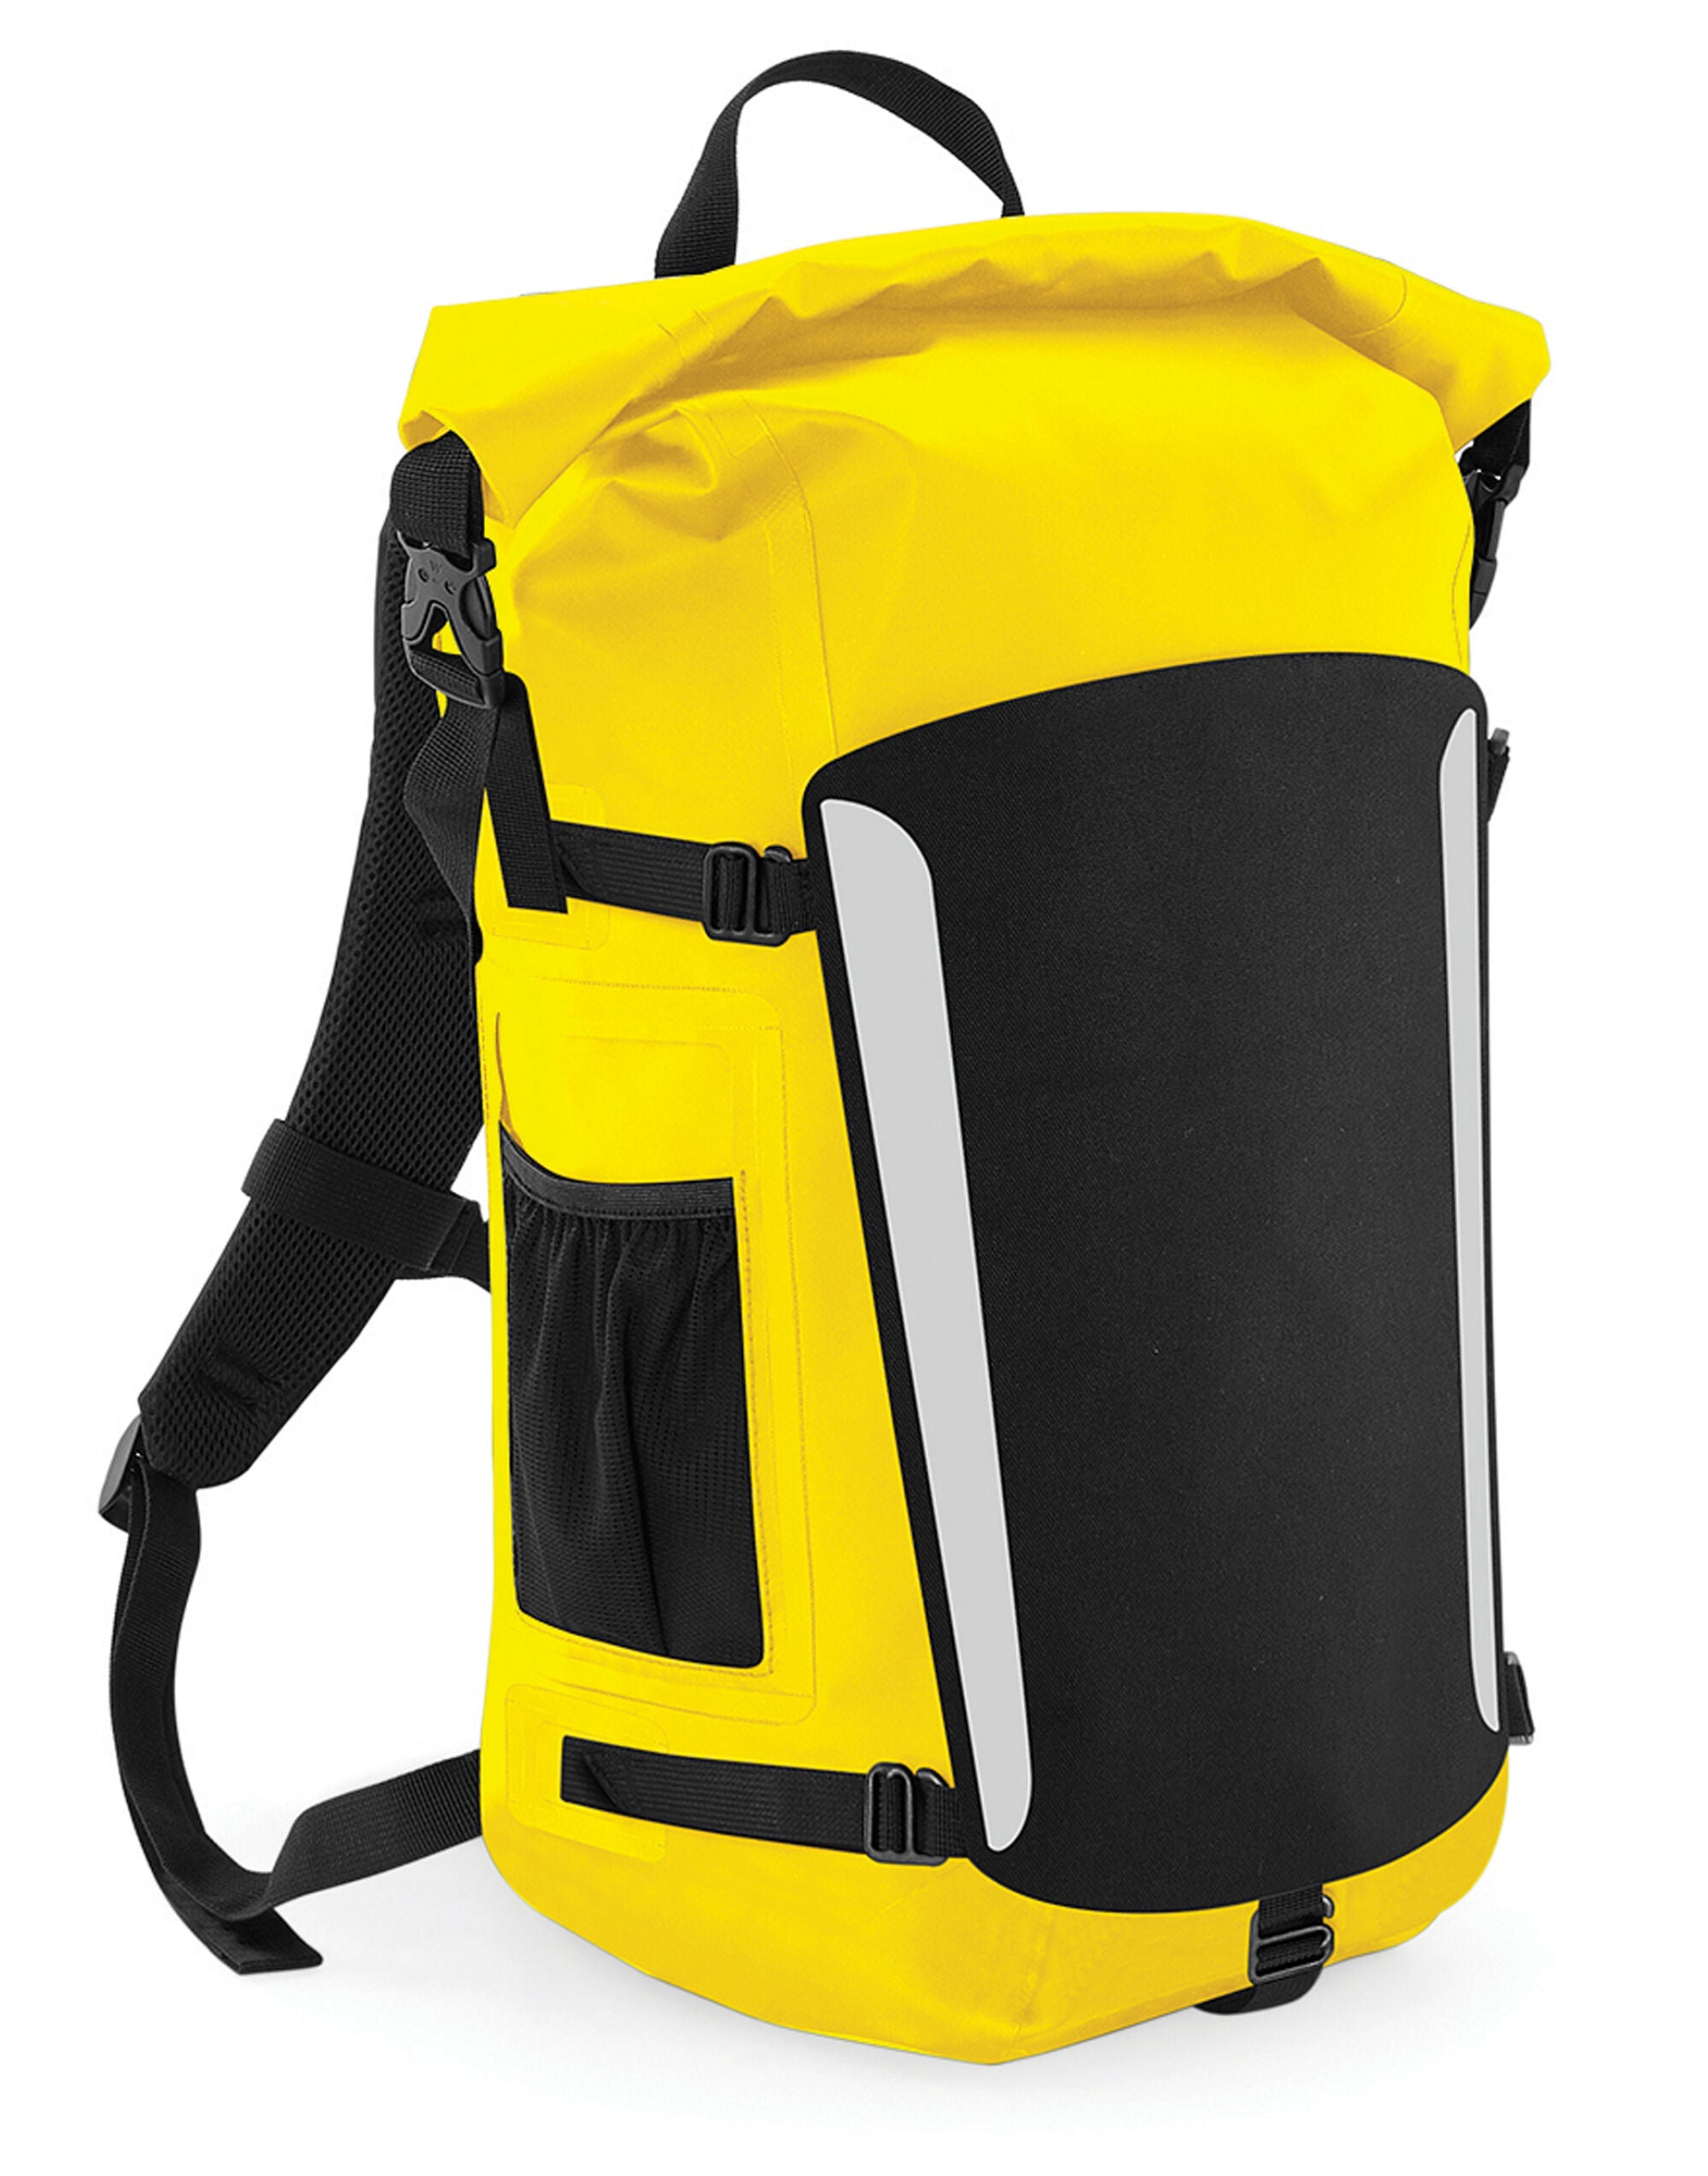 Quadra SLX® 25 Litre Waterproof Backpack
 Secure rolltop-and-clip closure system (QX625)